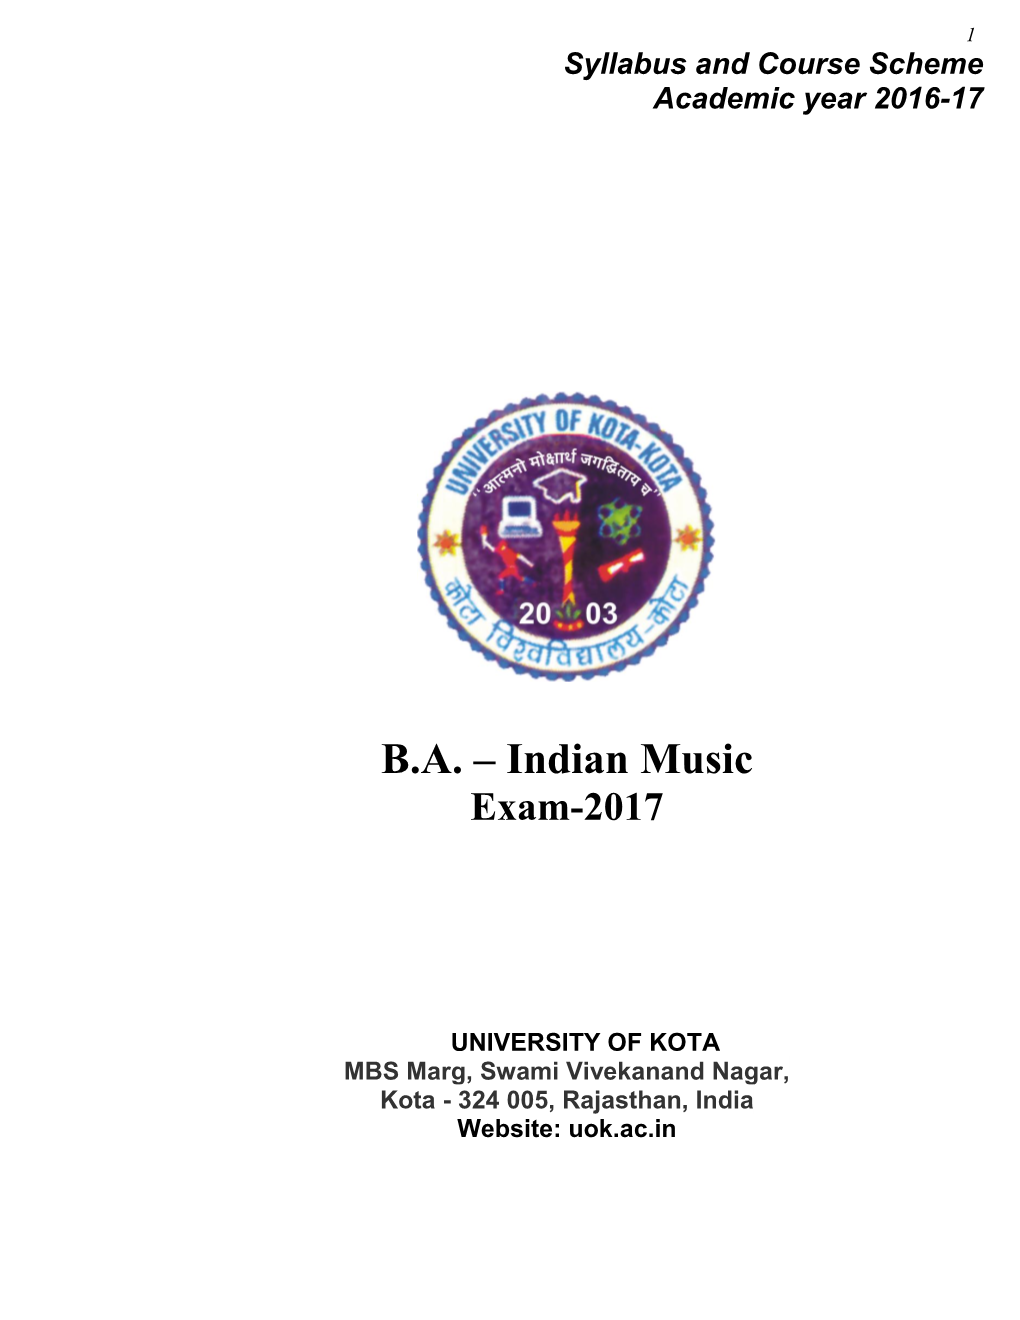 BA – Indian Music